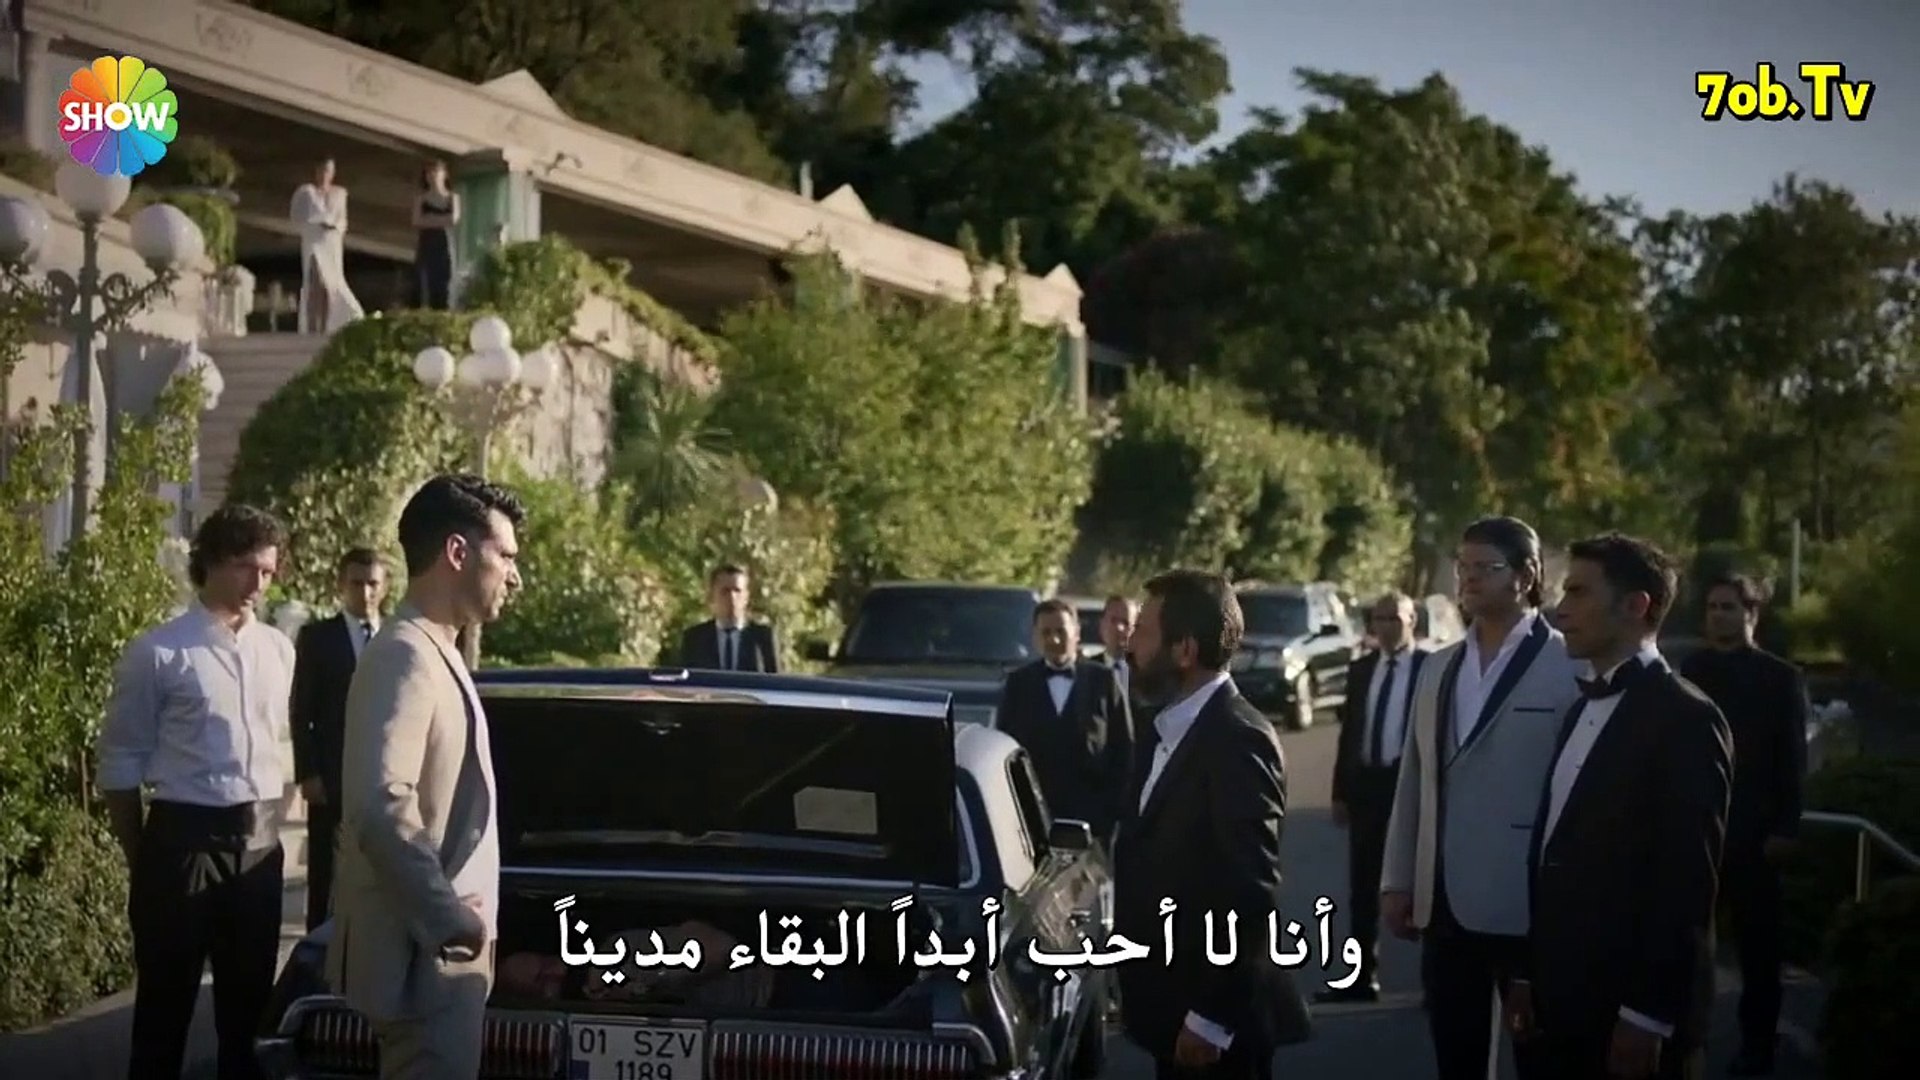 مسلسل رامو الحلقة 13 القسم 1 مترجم للعربية - فيديو Dailymotion